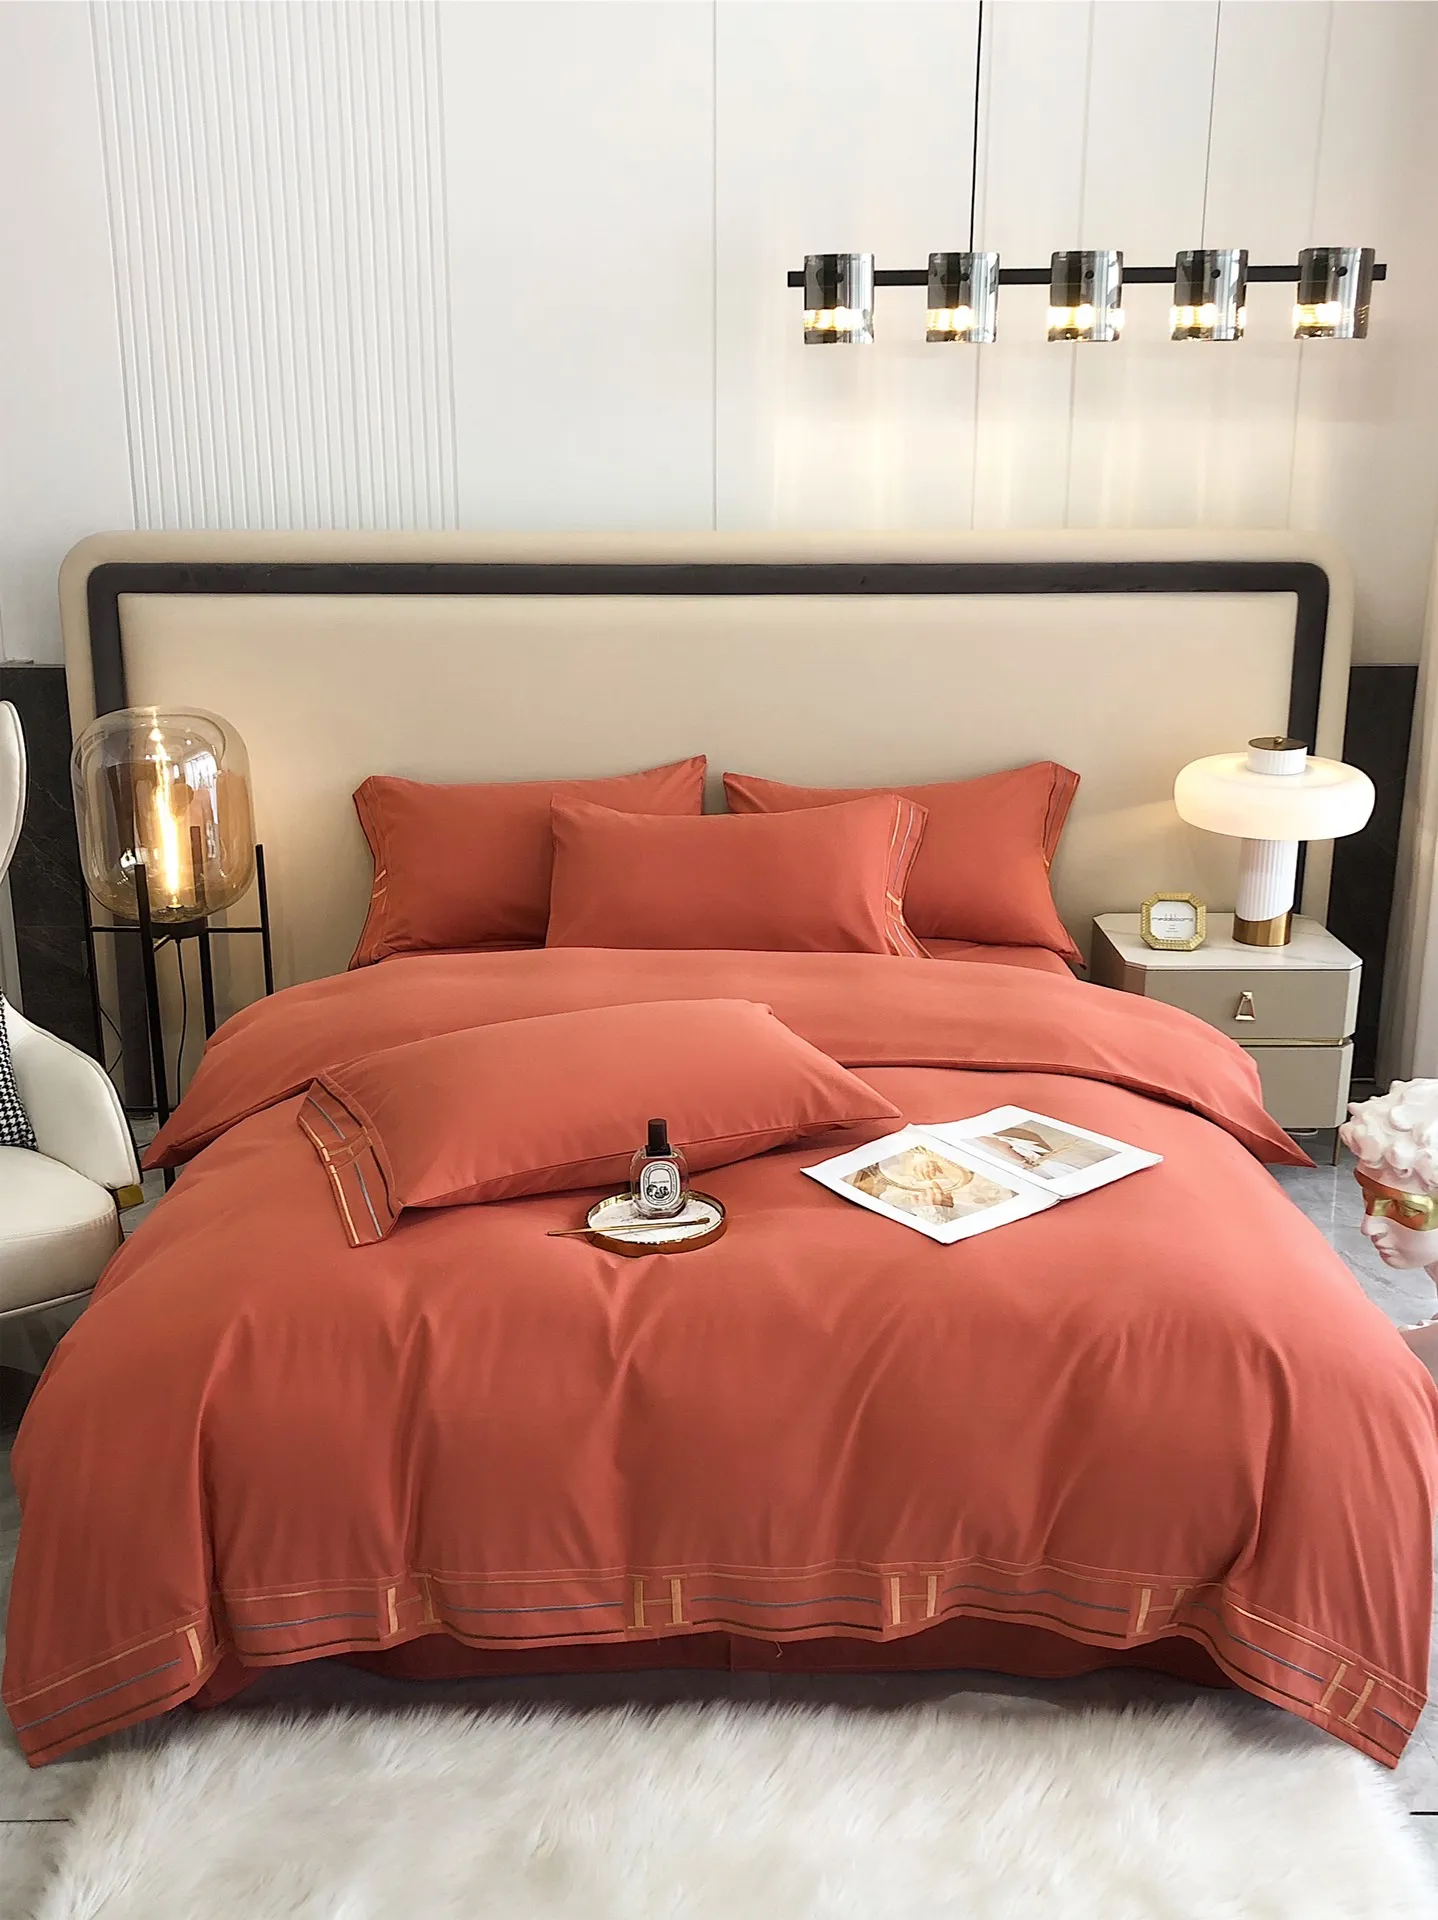 Conjuntos de cama de luxo conjuntos de alta qualidade Days seda algodão elegância cores soft cama de cama conforto capa de colcha com bordado